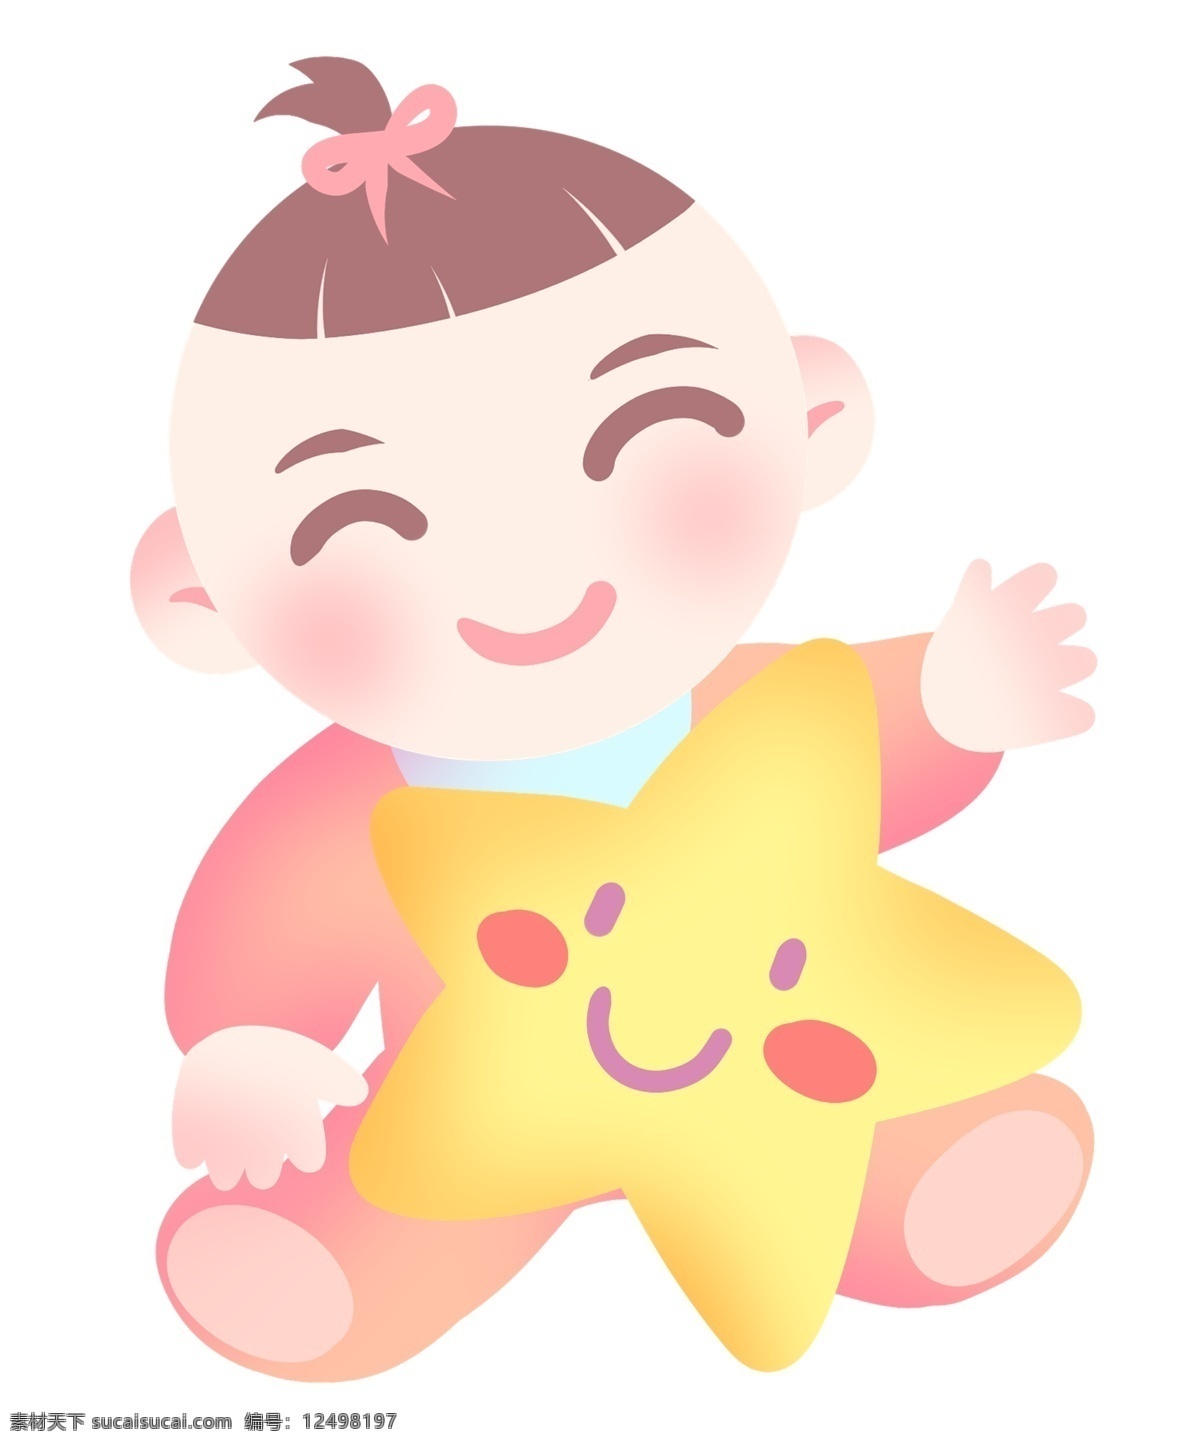 微笑 宝贝 星星 插画 微笑的星星 卡通插画 宝贝插画 婴儿插画 可爱的宝贝 微笑的宝贝 高兴的宝贝